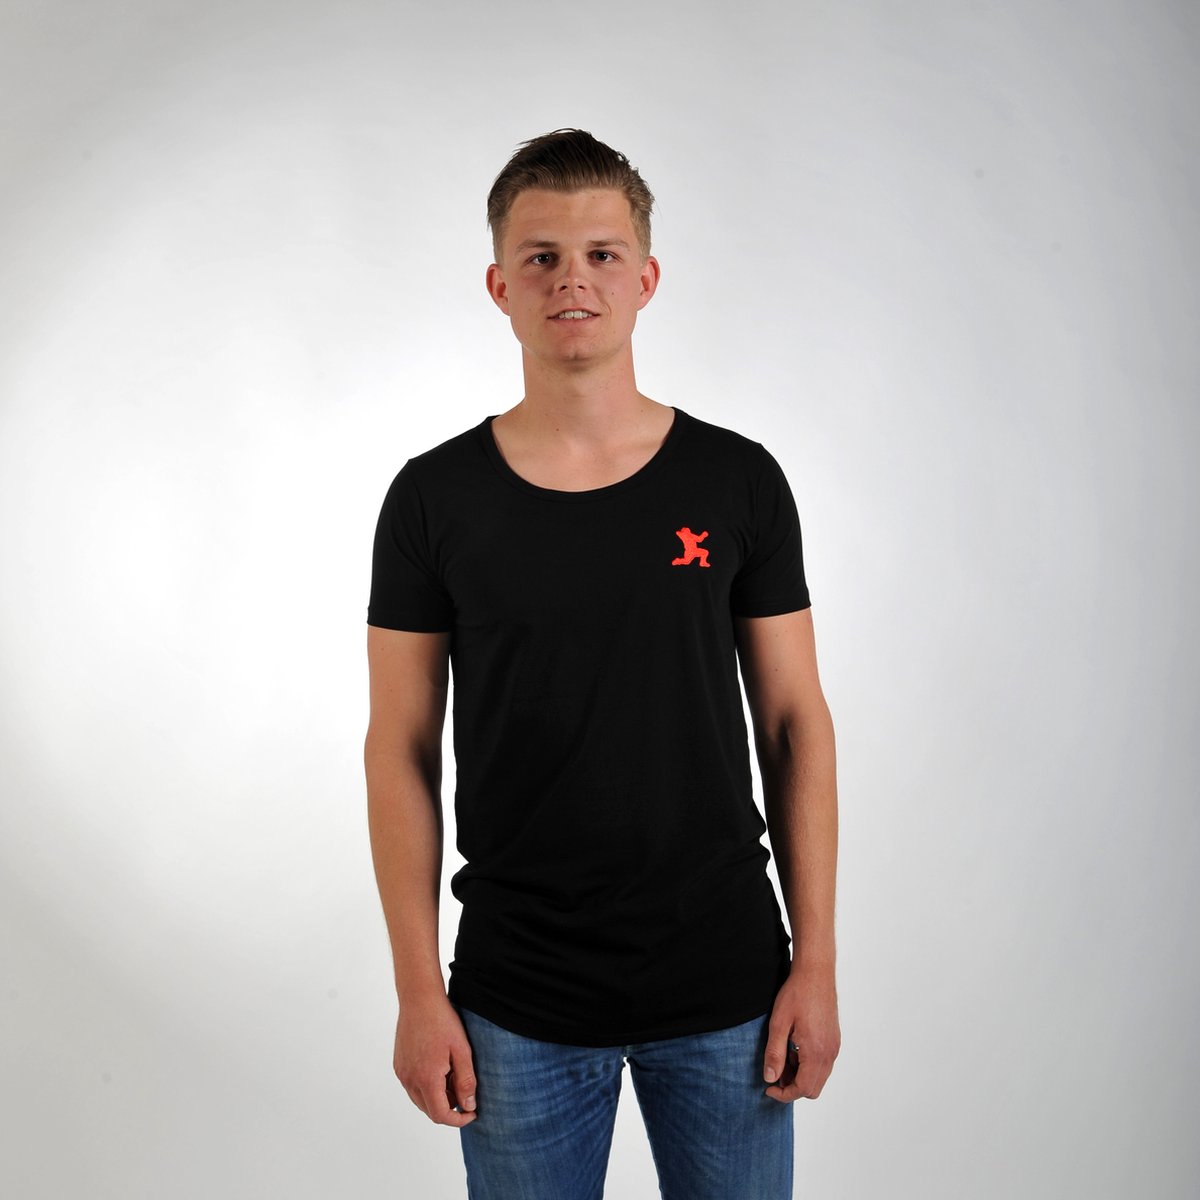 Imperatore - Andy van der Meijde t-shirt - zwart - rood logo - Maat S